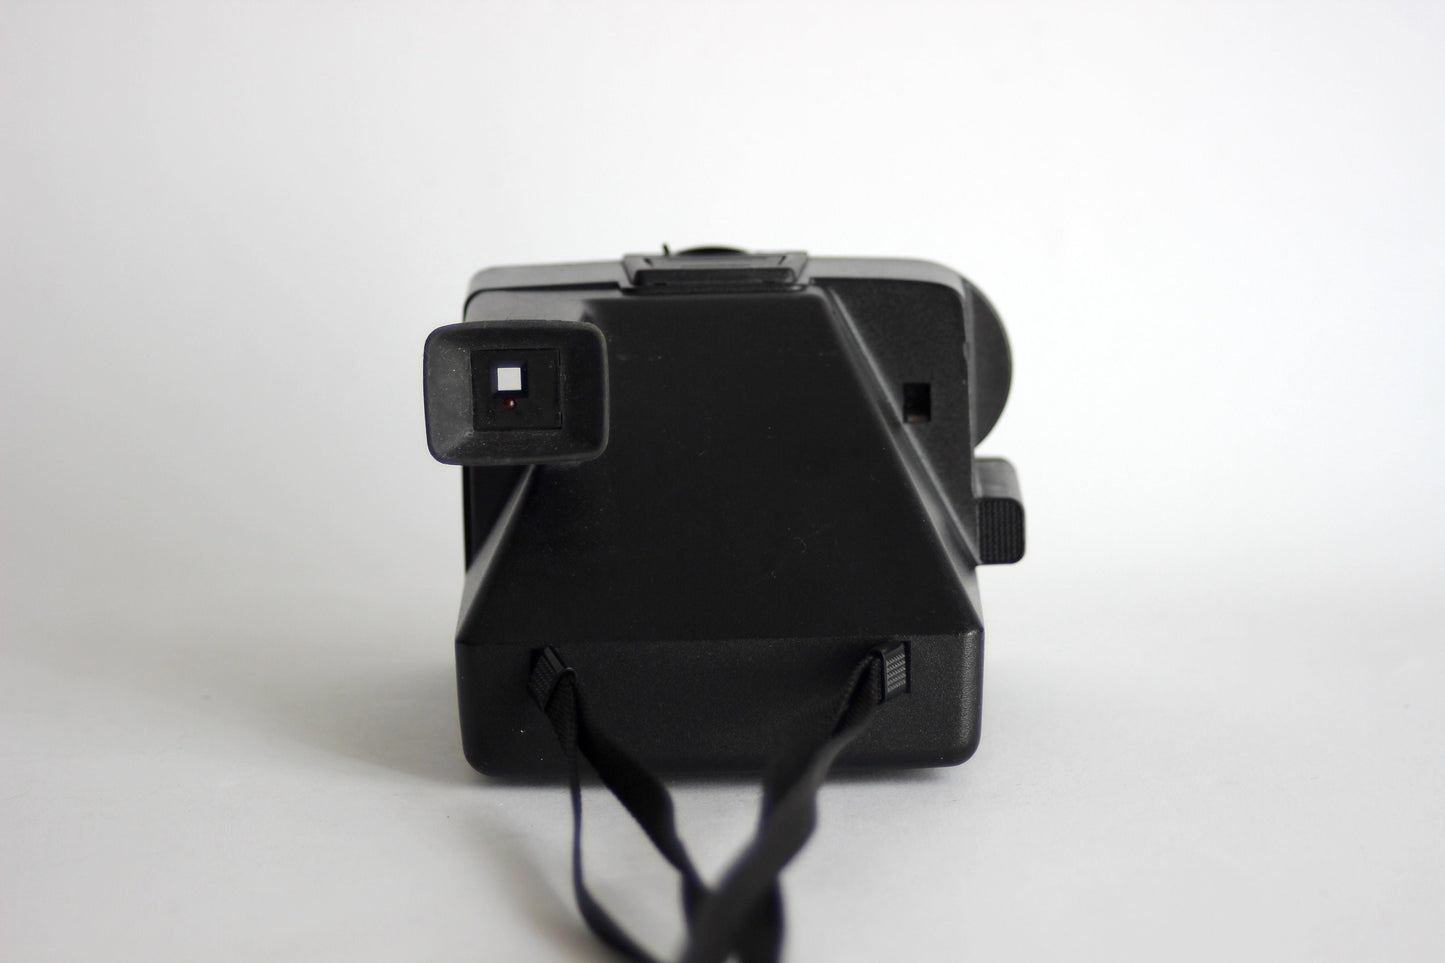 Polaroid 5000 Sonar Auto Focus